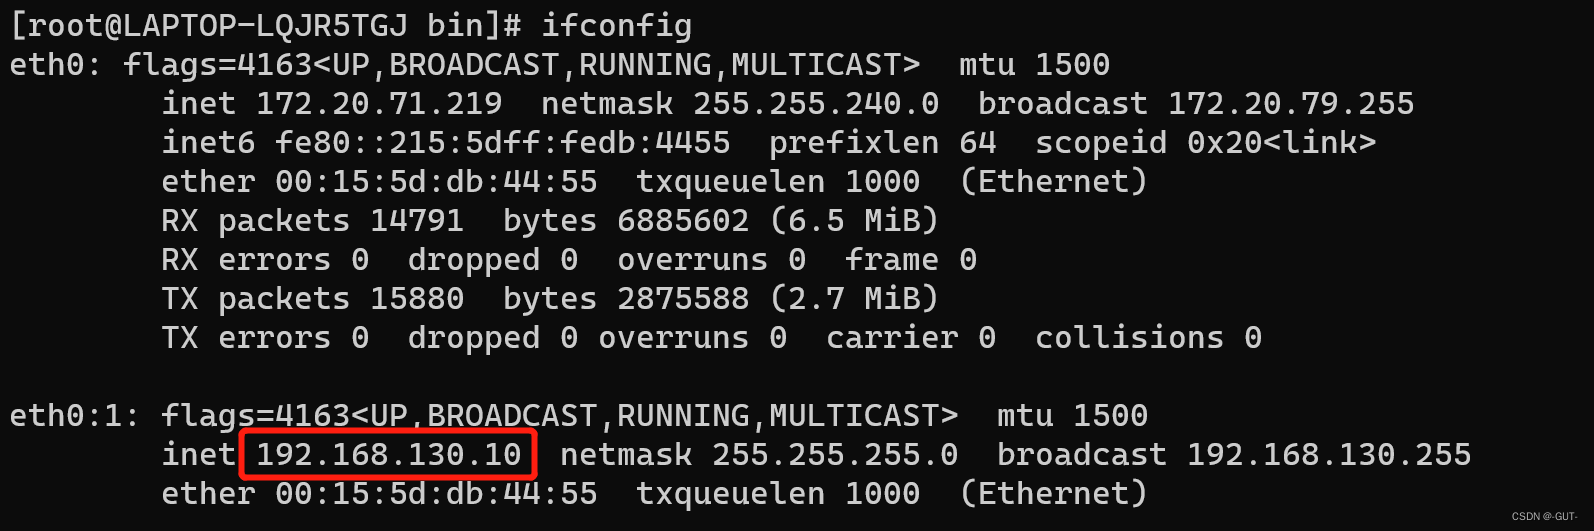 这是在wsl中安装的linux新增的ip地址